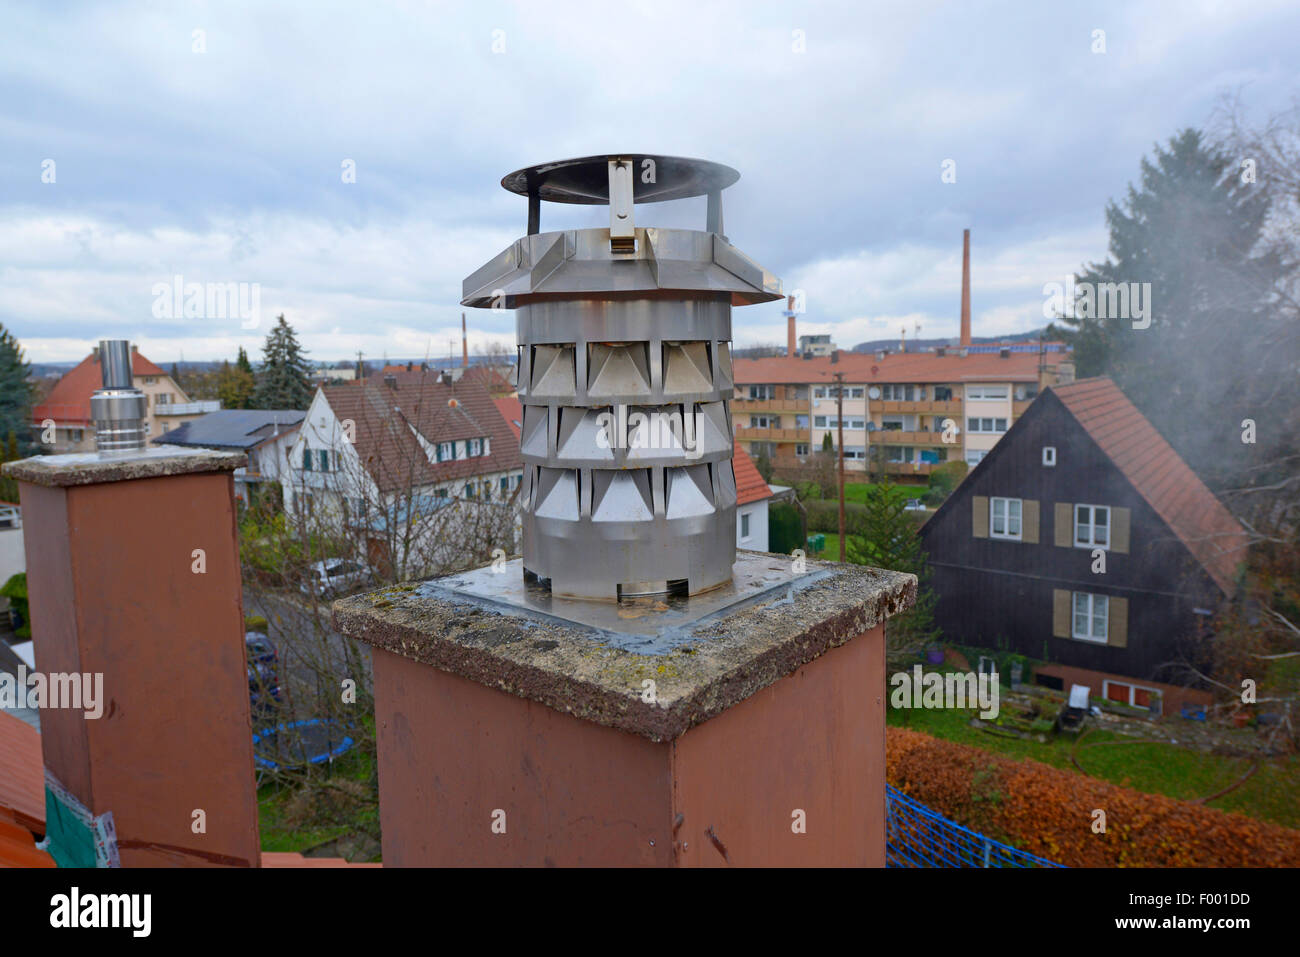 Windkat-Schornstein, Deutschland Stockfotografie - Alamy